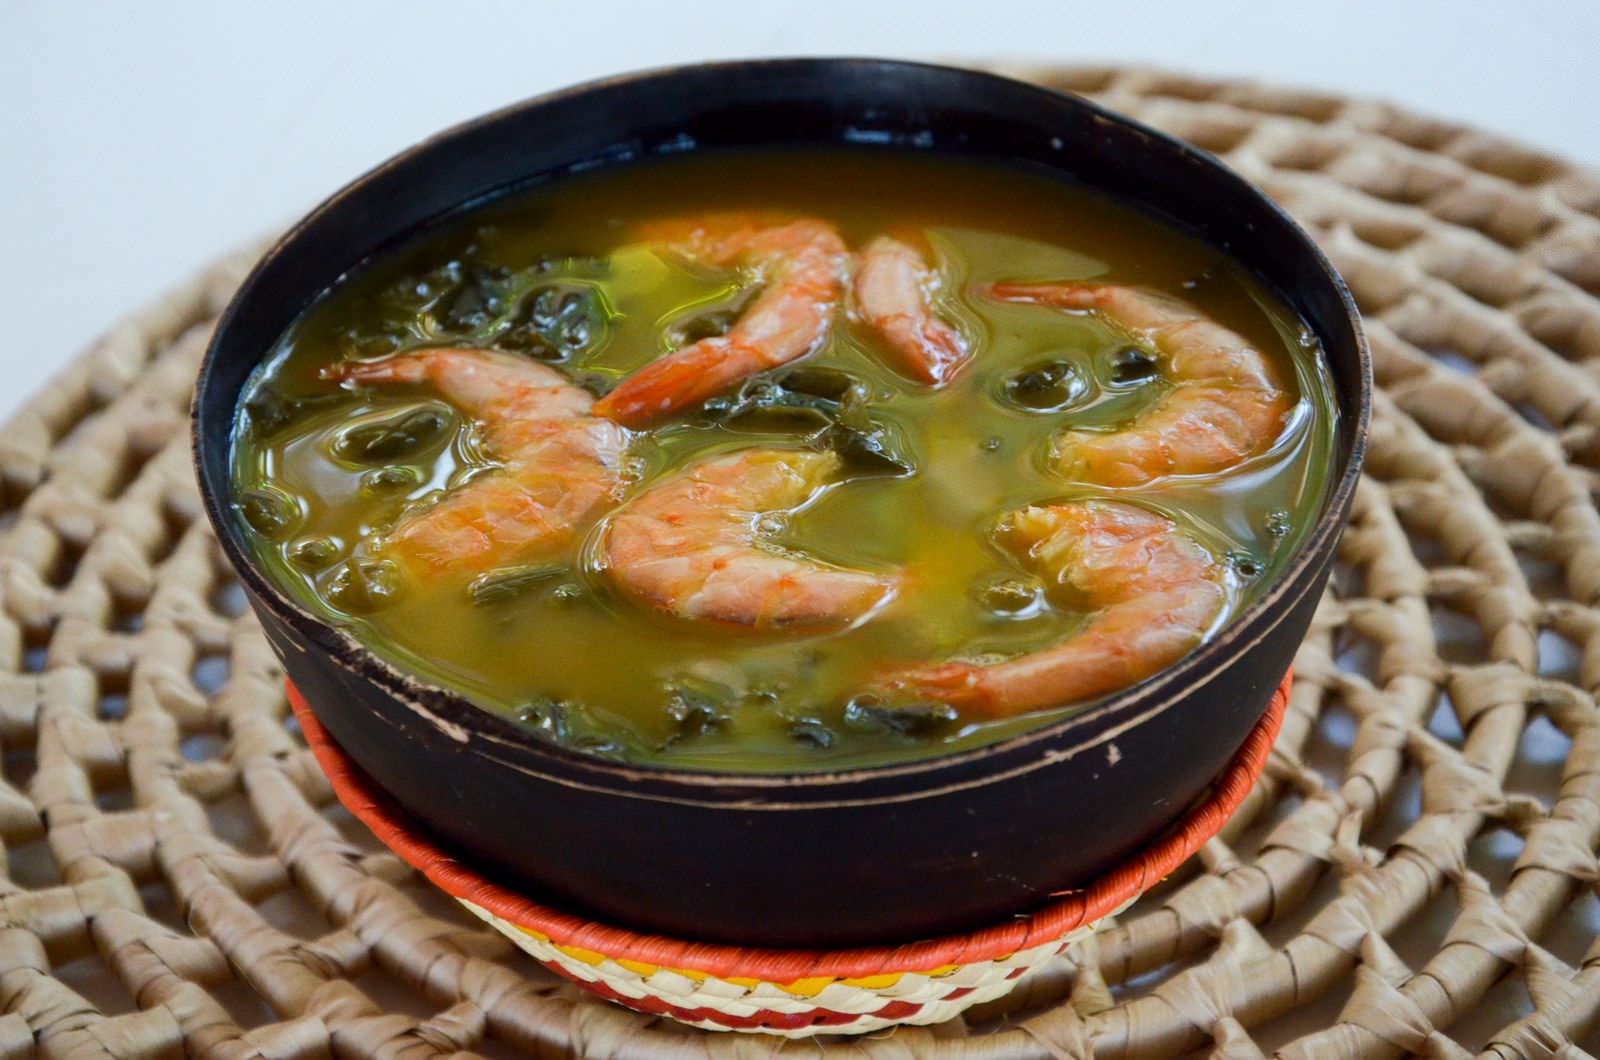 Culinária do Amazonas: Aprenda a fazer 3 receitas típicas com mandioca